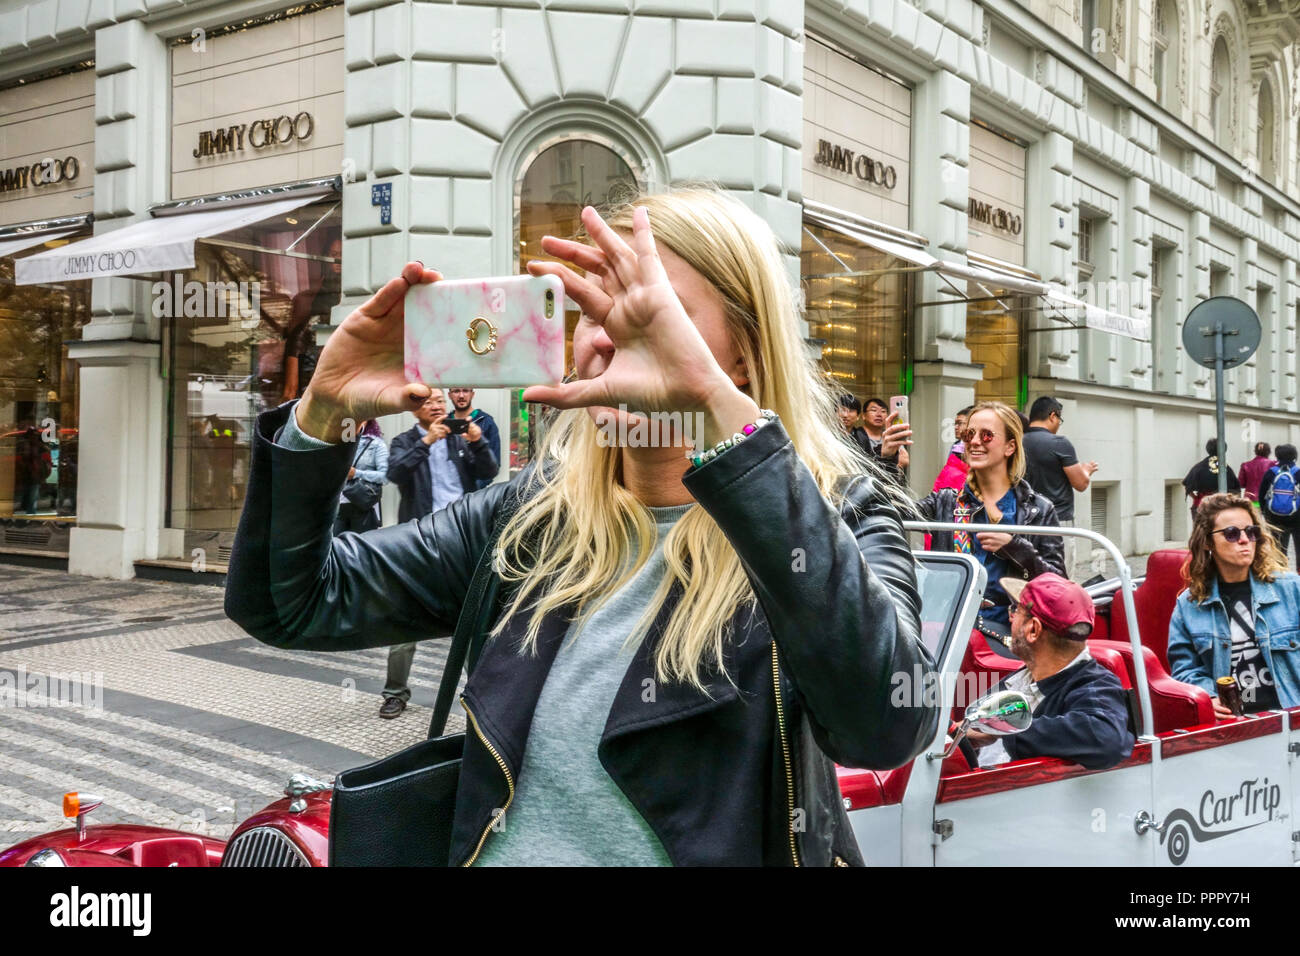 Giovane donna che scatta foto al telefono davanti al negozio di lusso Jimmy Choo in via Parizska, Praga, Repubblica Ceca Foto Stock